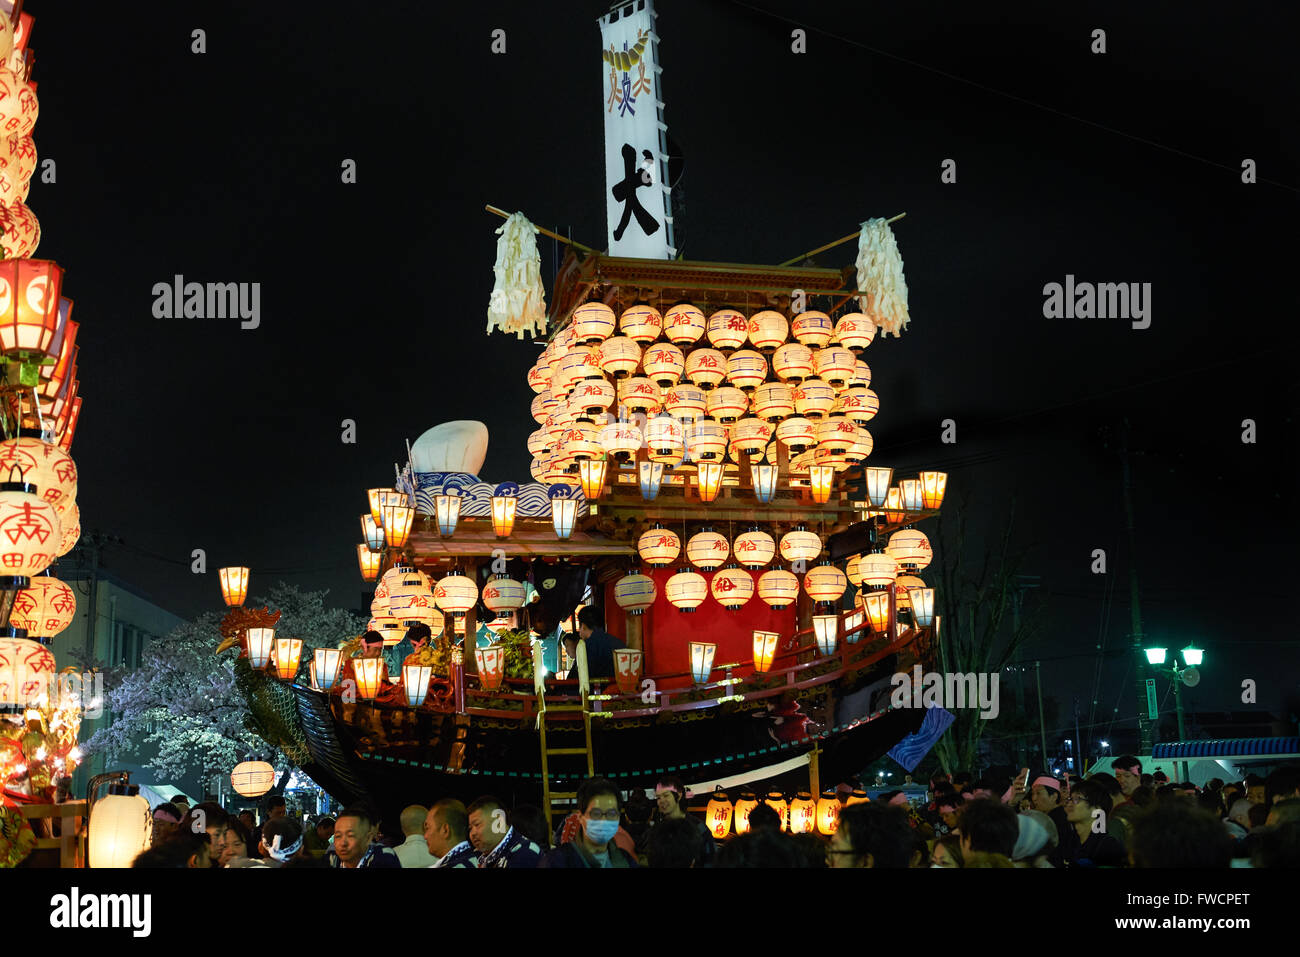 2 avril 2016 - flotteurs traditionnels japonais en face de la gare de Inuyama. Chaque flotteur est décoré de 365 lanternes. Le festival qui remonte à 1635 a lieu chaque année le premier samedi et dimanche d'avril. © Julian Krakowiak/AFLO/Alamy Live News Banque D'Images